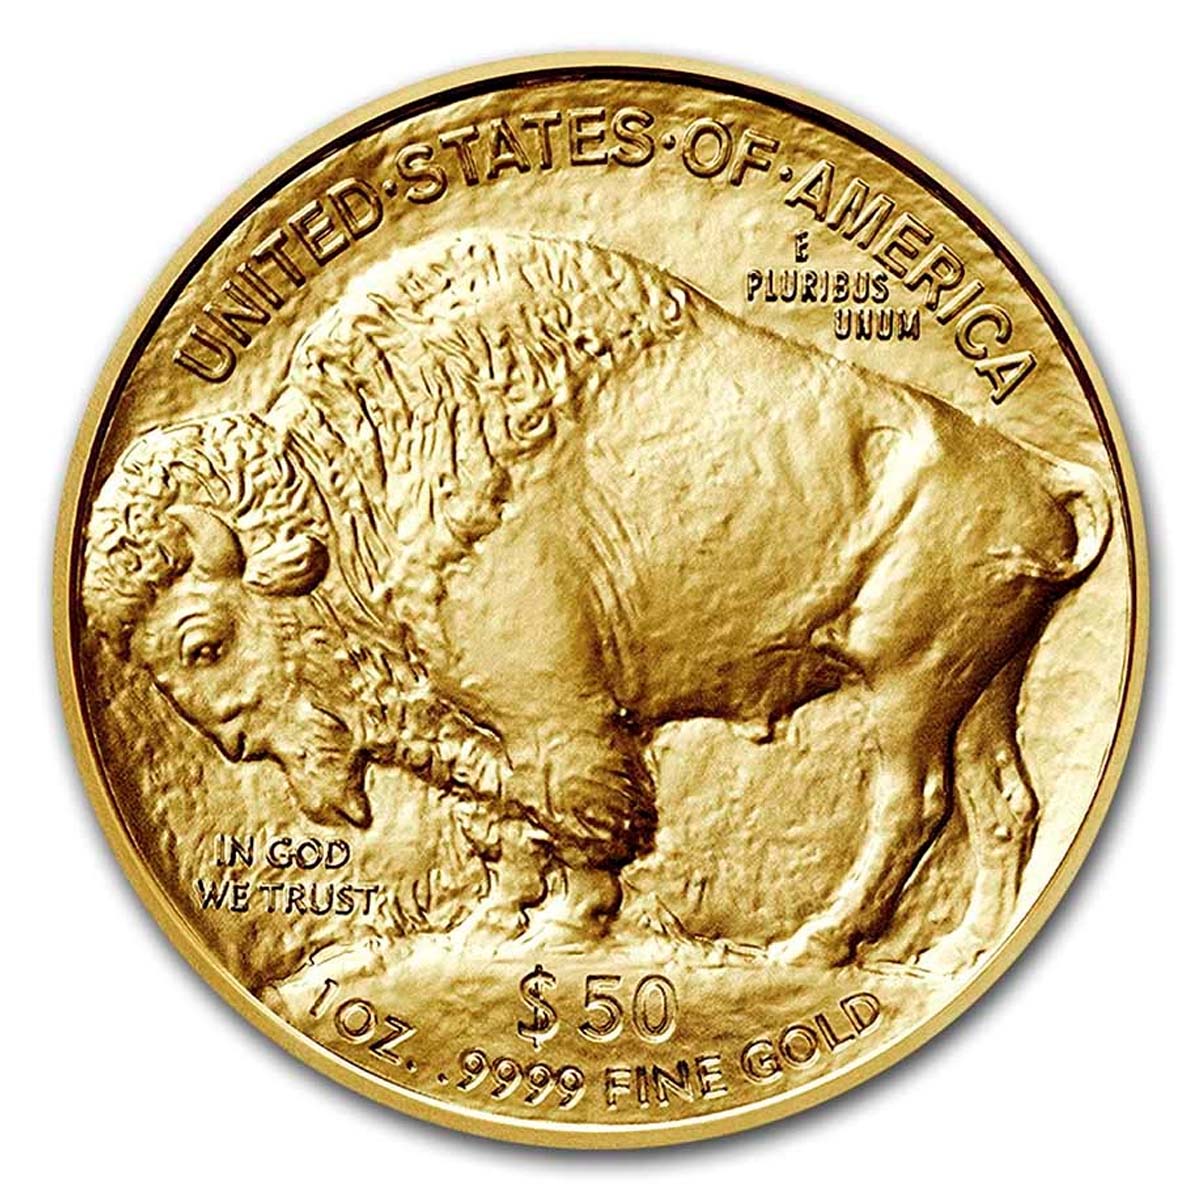 1 oz Gold Coin - American Buffalo 